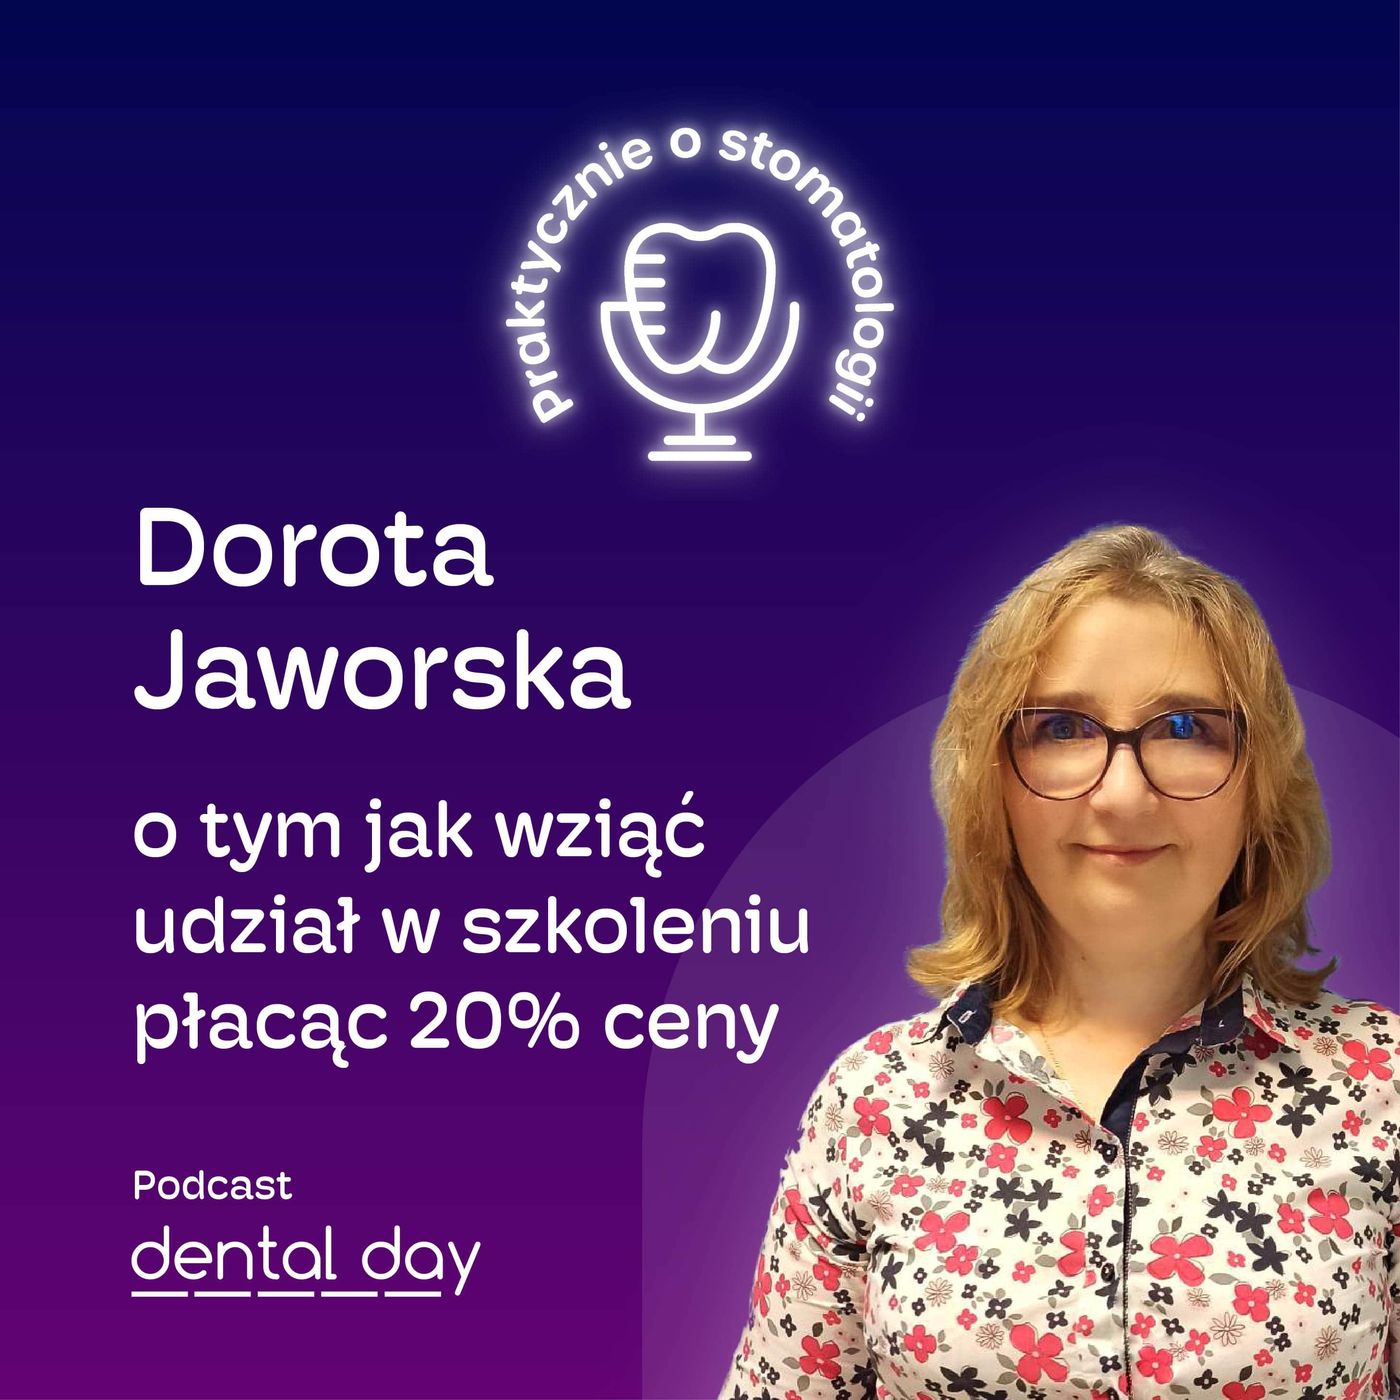 Dorota Jaworska: jak wziąć udział w szkoleniu płacąc 20% ceny